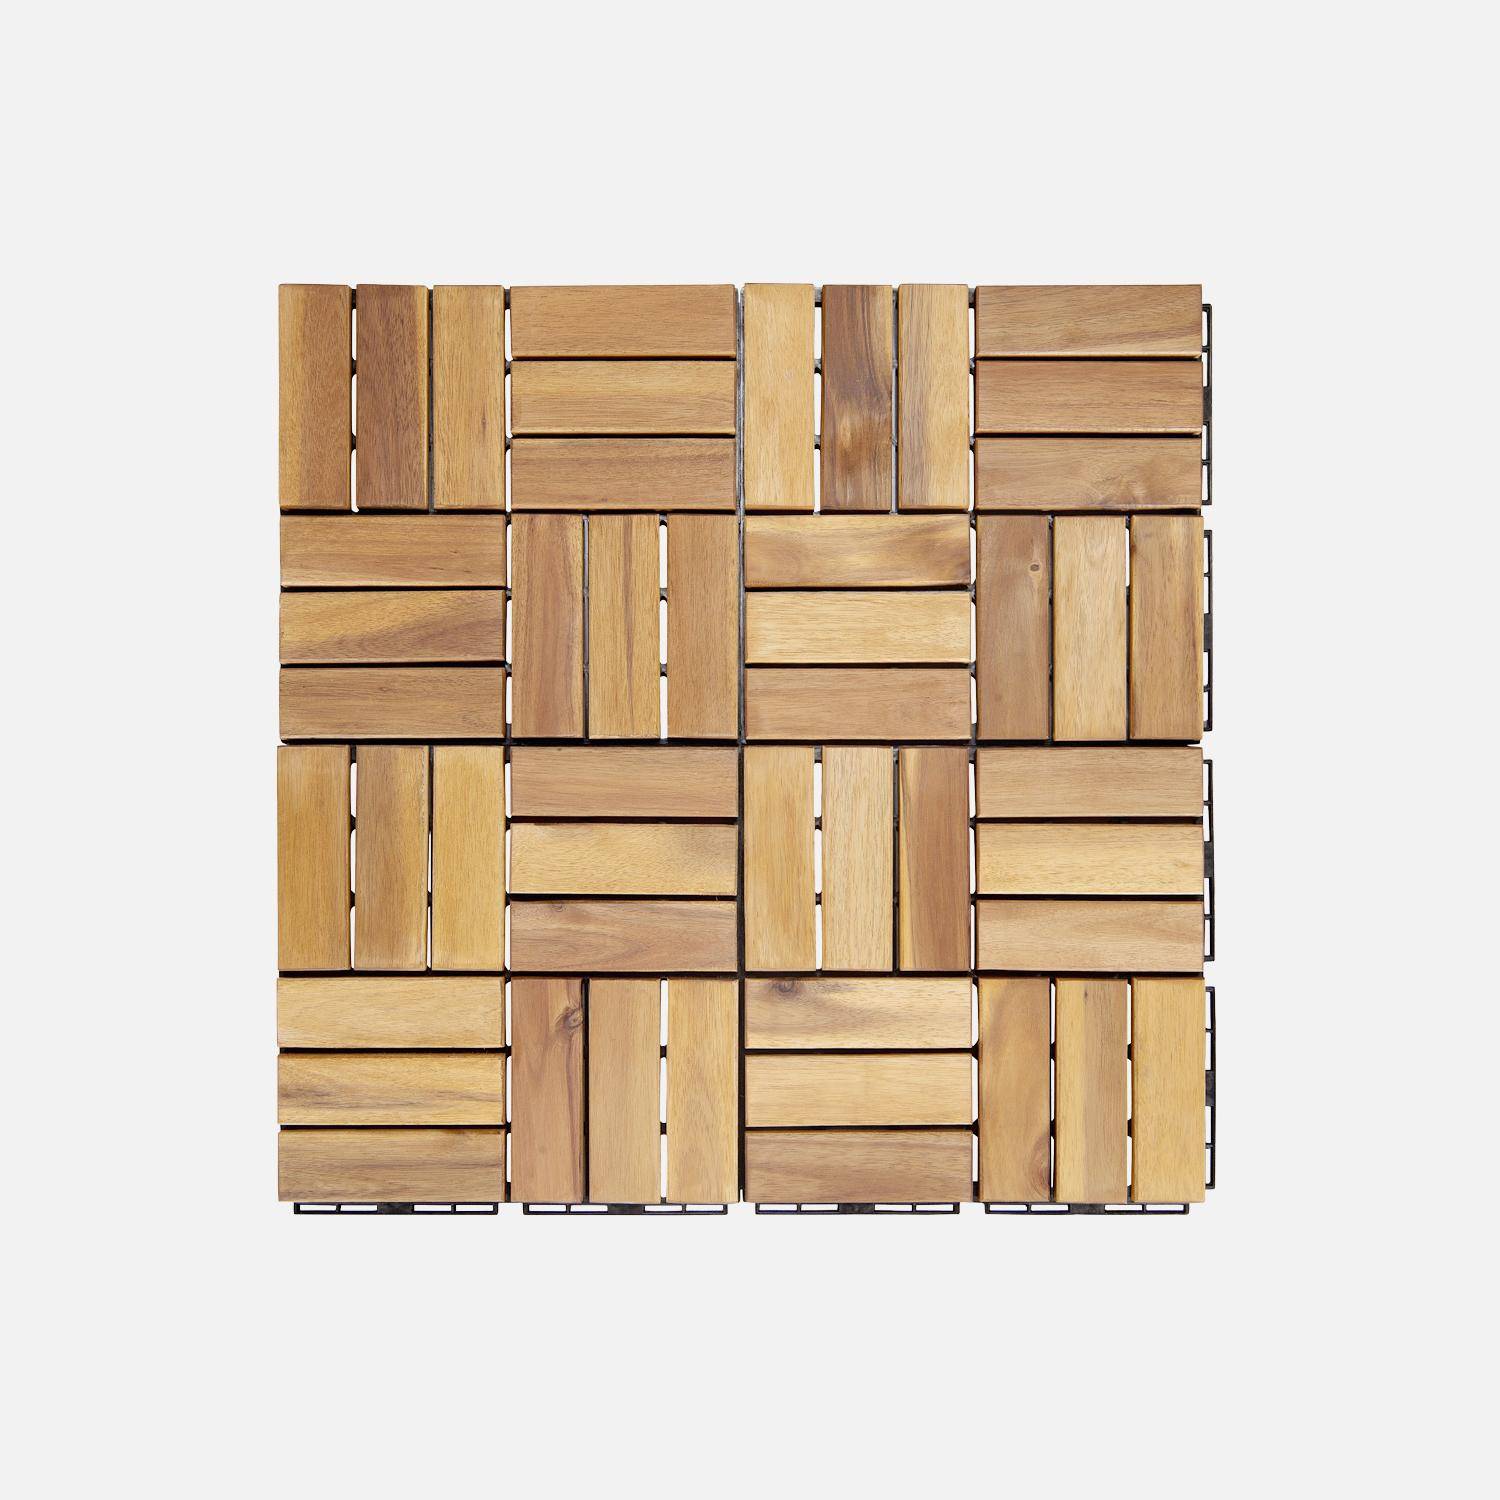 Lote de 36 ladrilhos de madeira de acácia para decks 30x30cm, padrão quadrado, encaixáveis Photo4